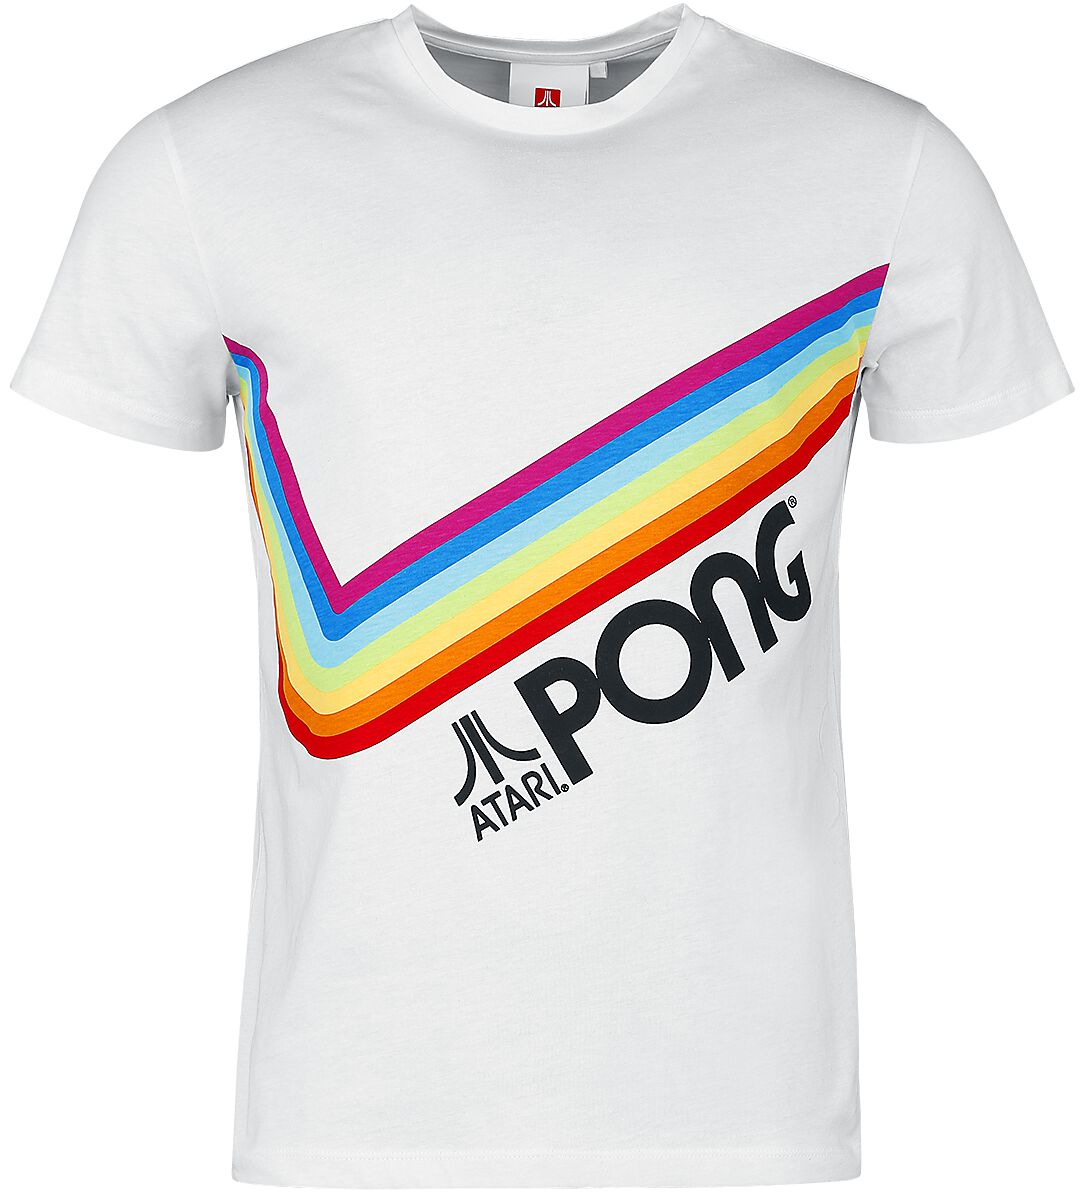 Atari - Gaming T-Shirt - Pong - Pride Rainbow - S bis 3XL - für Männer - Größe L - weiß  - EMP exklusives Merchandise!